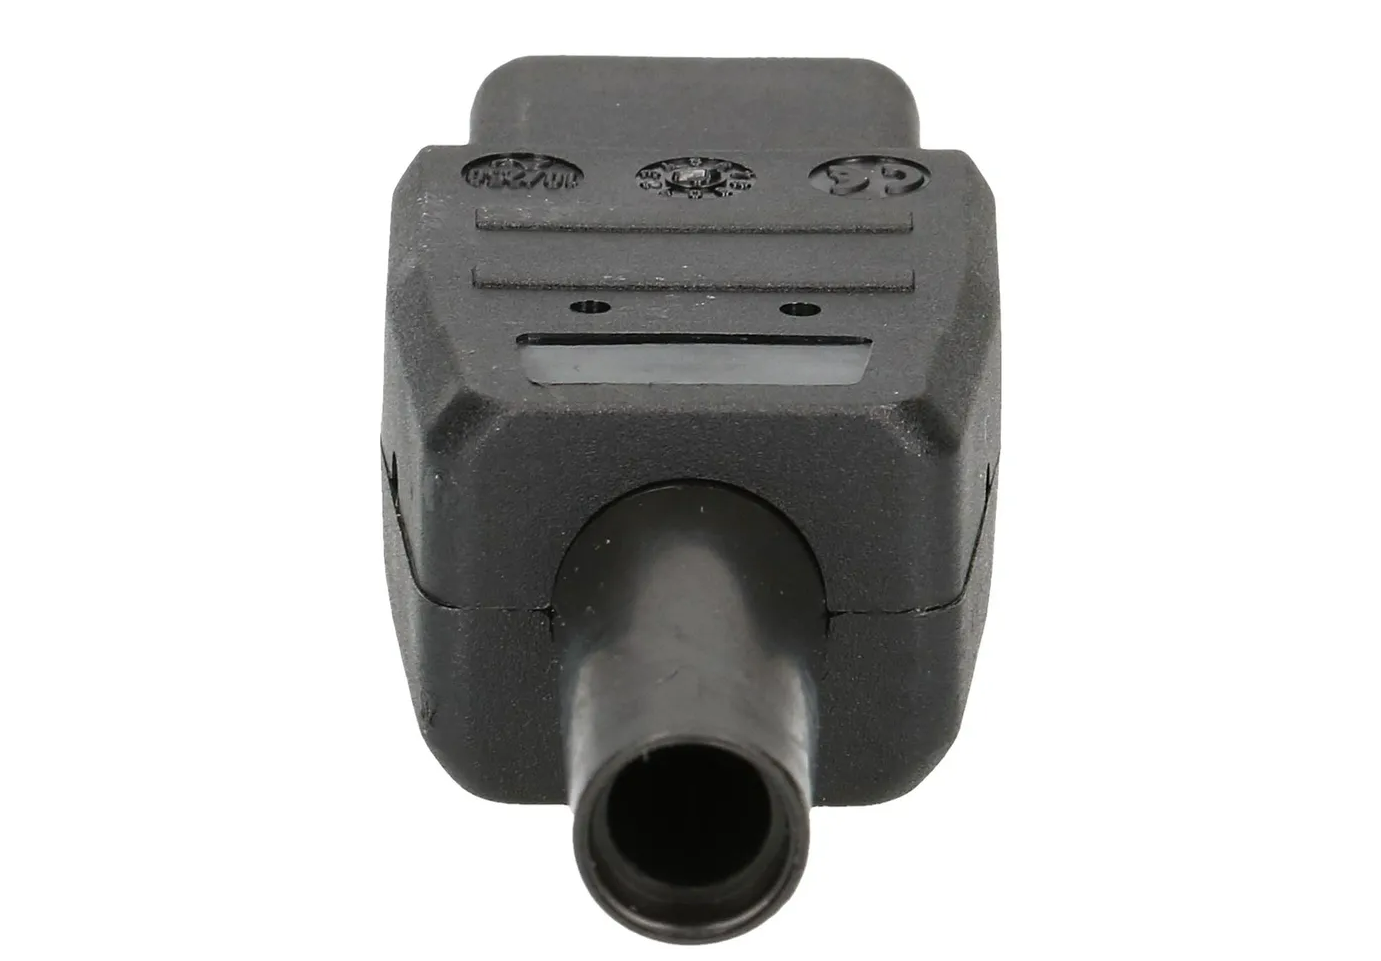 Apparatesteckdose Typ 113 IEC320-C13 3-polig schwarz